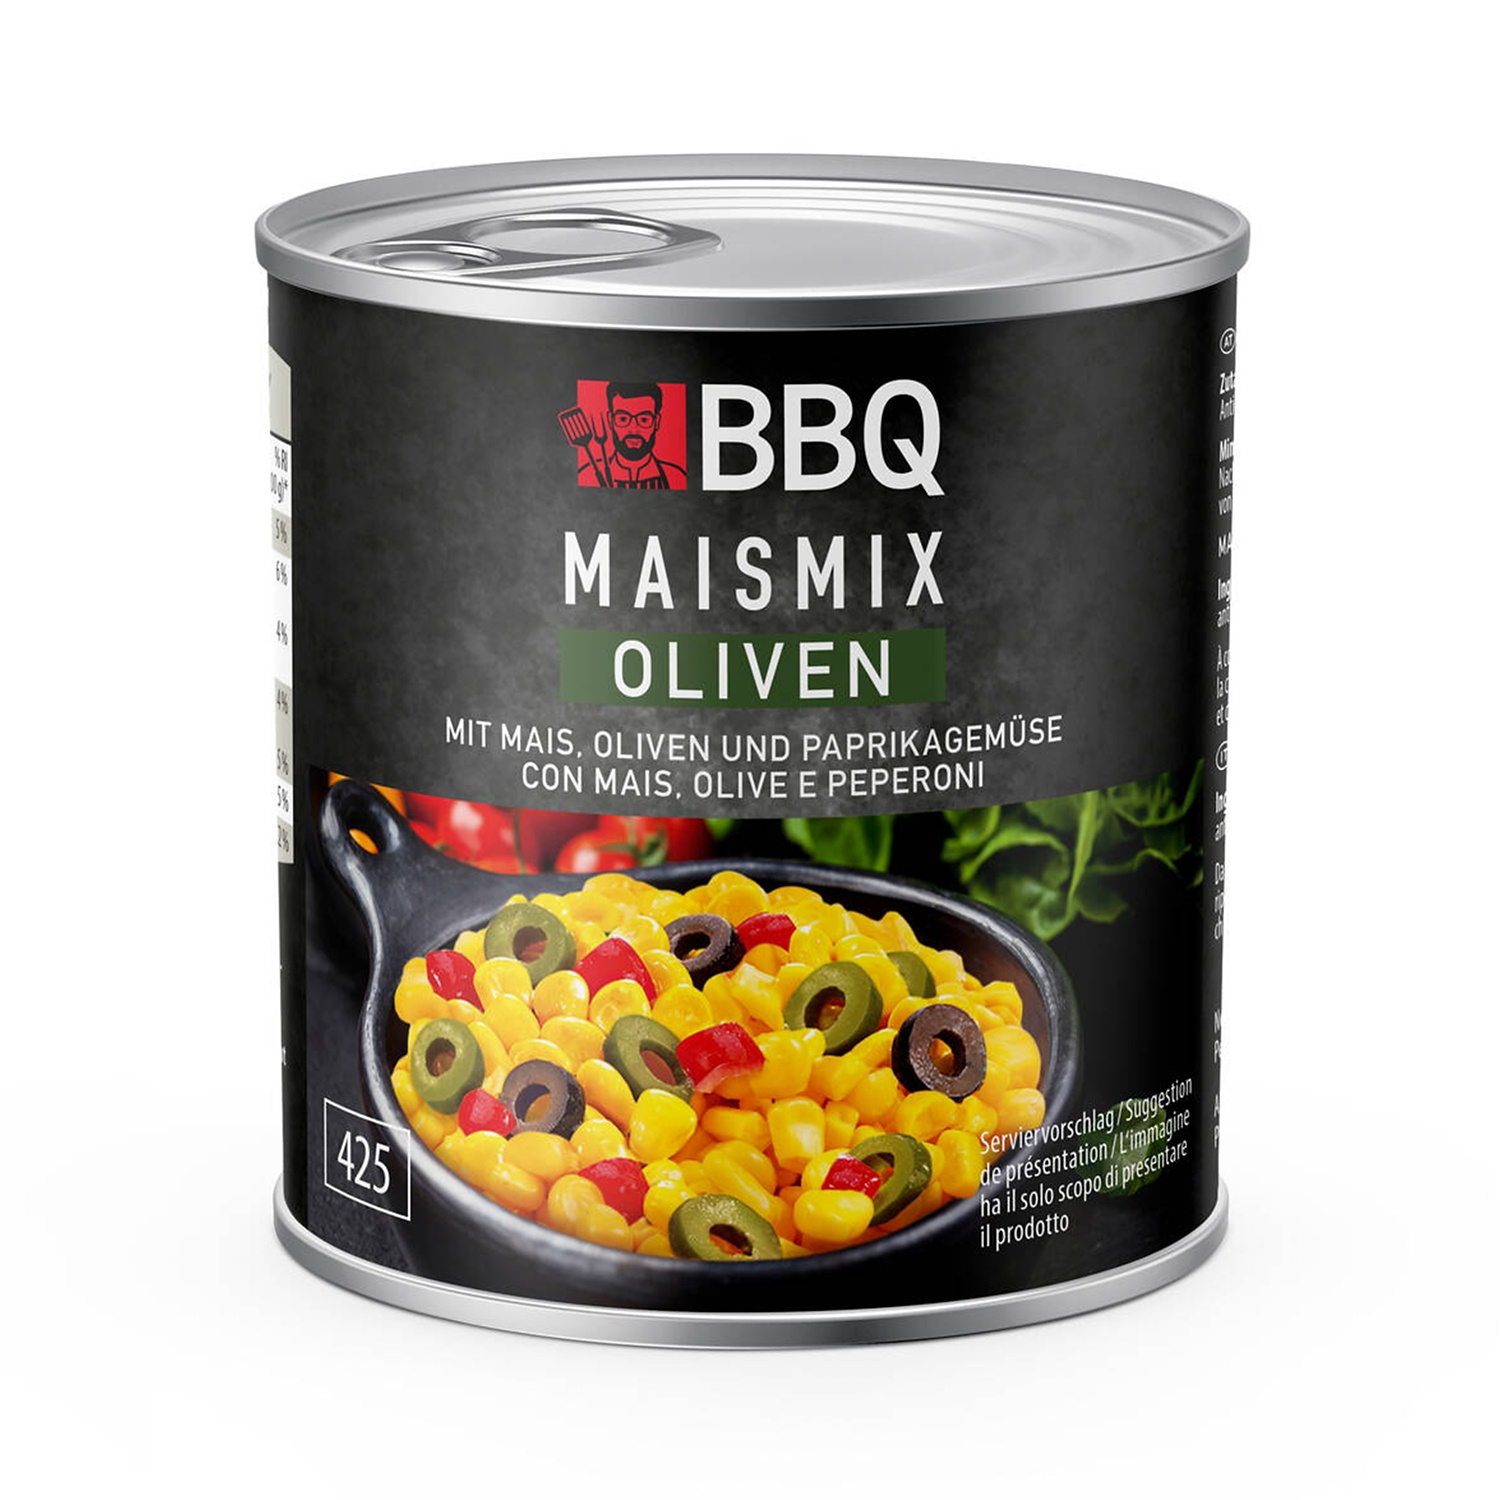 BBQ Mais Mix alle olive